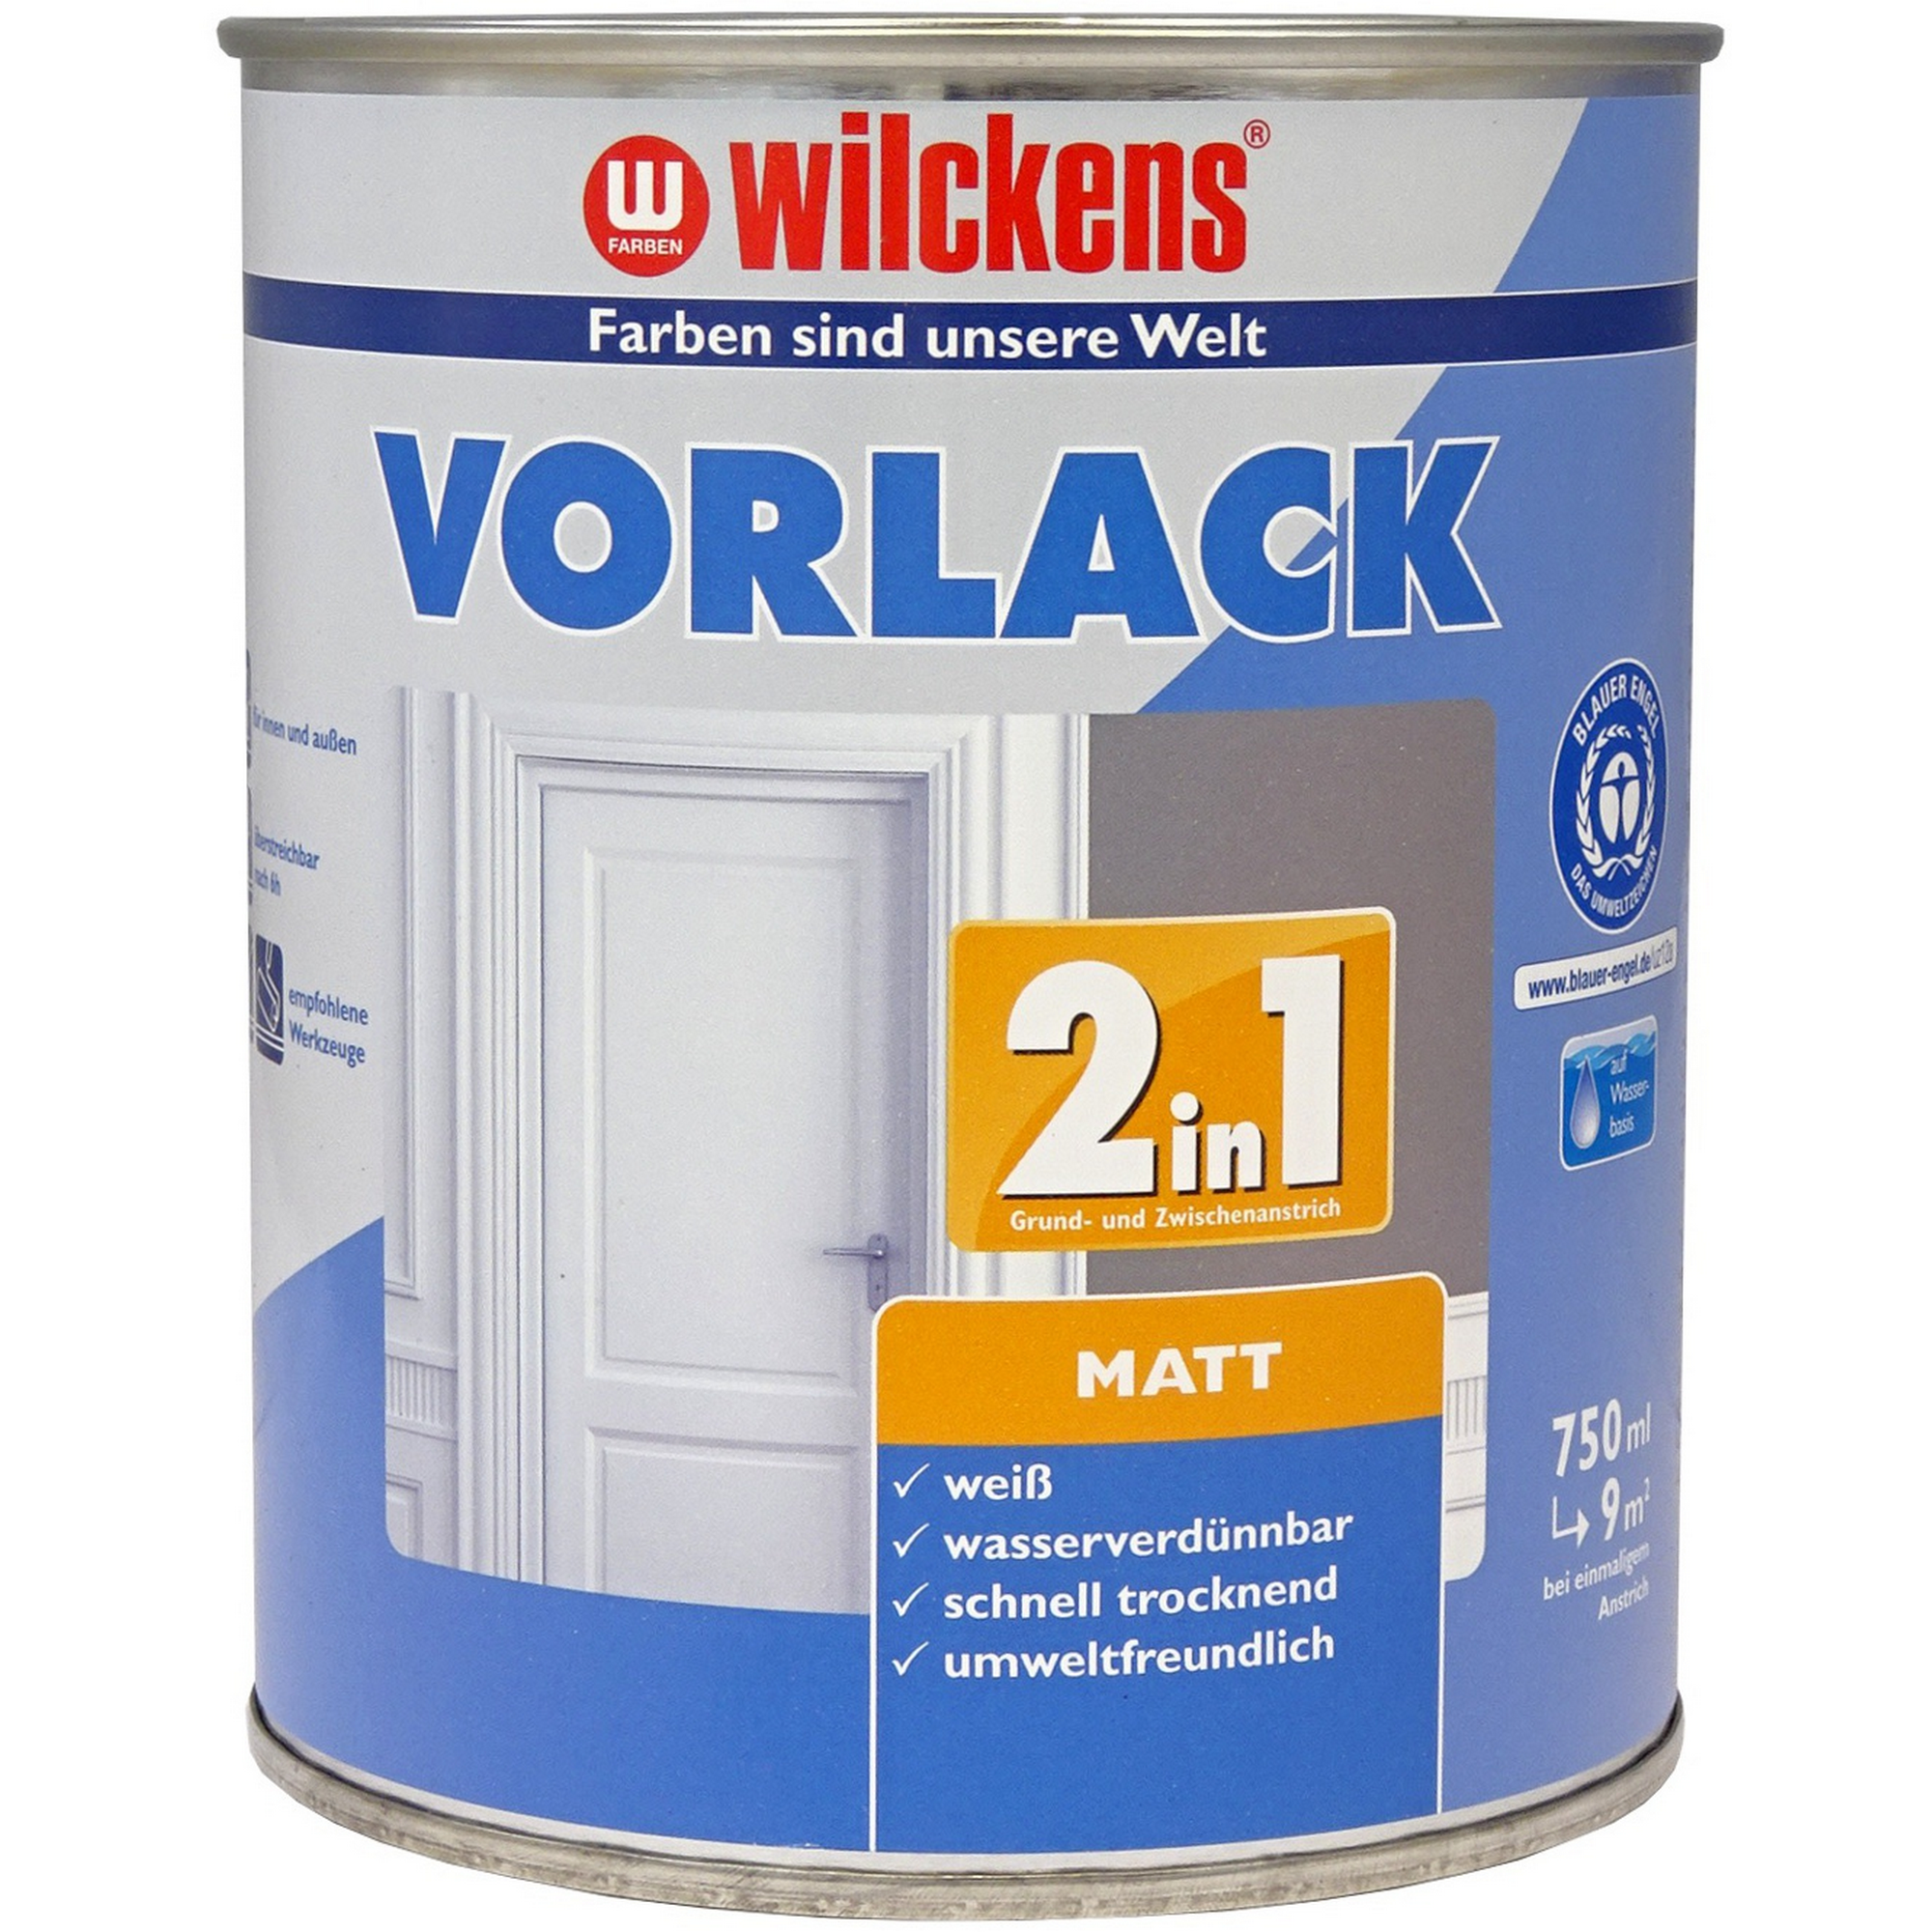 Vorlack '2in1' weiß matt 750 ml + product picture